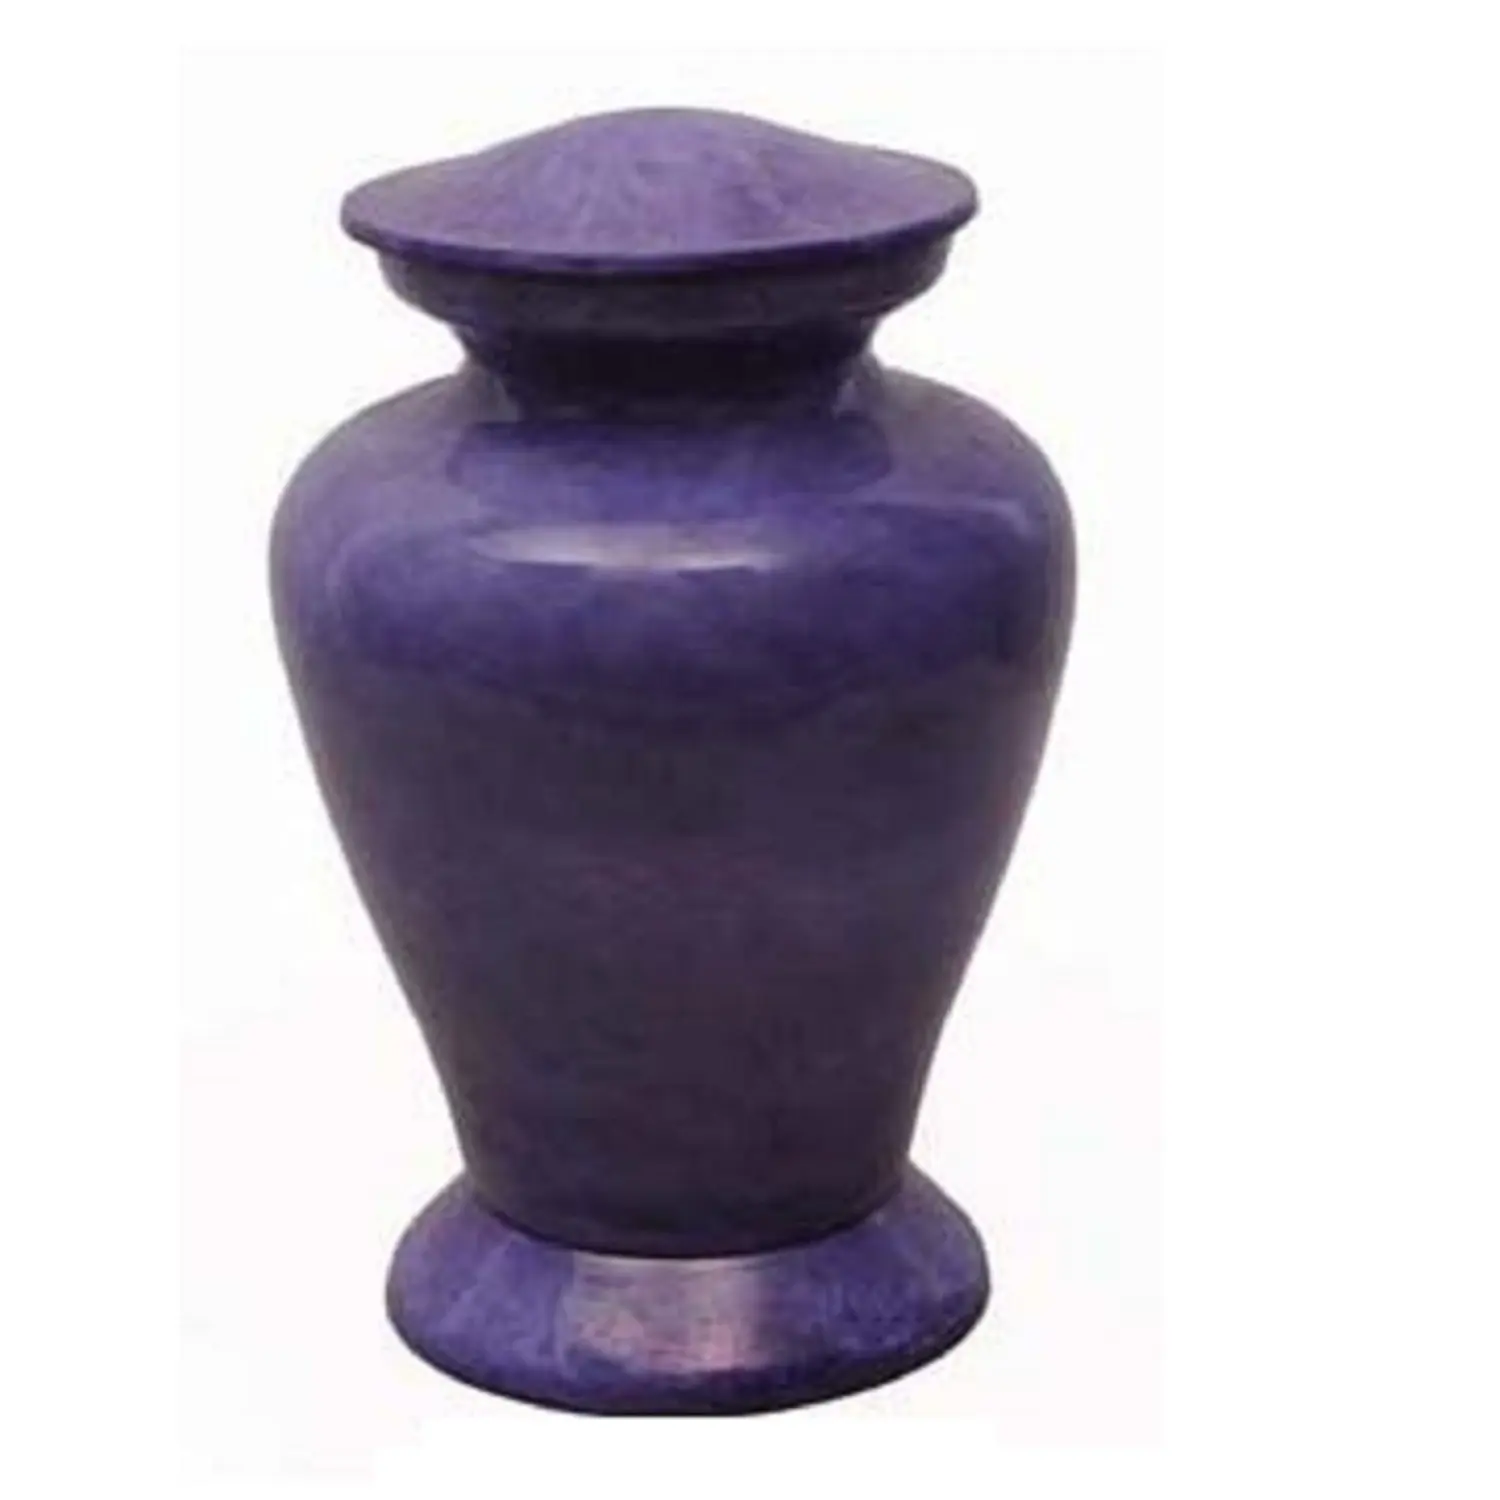 Urnas funerarias y religiosos para cenizas, recuerdo de cremación de aluminio, urna conmemorativa para cenizas, color púrpura, superventas